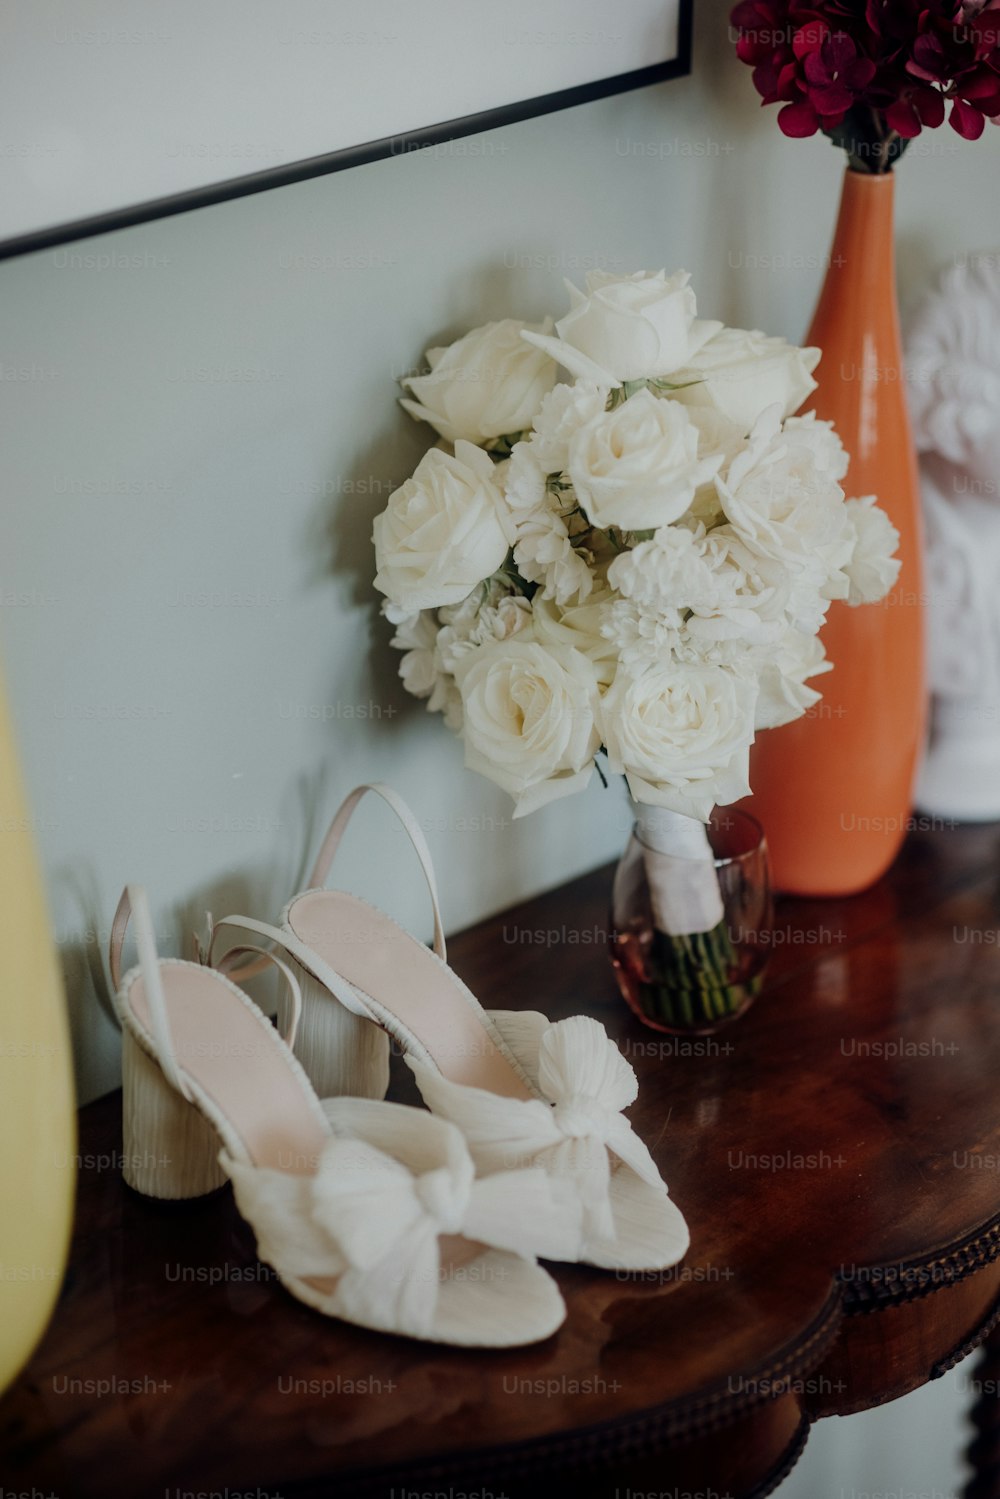 Un par de zapatos blancos sentados en una mesa junto a un jarrón de flores